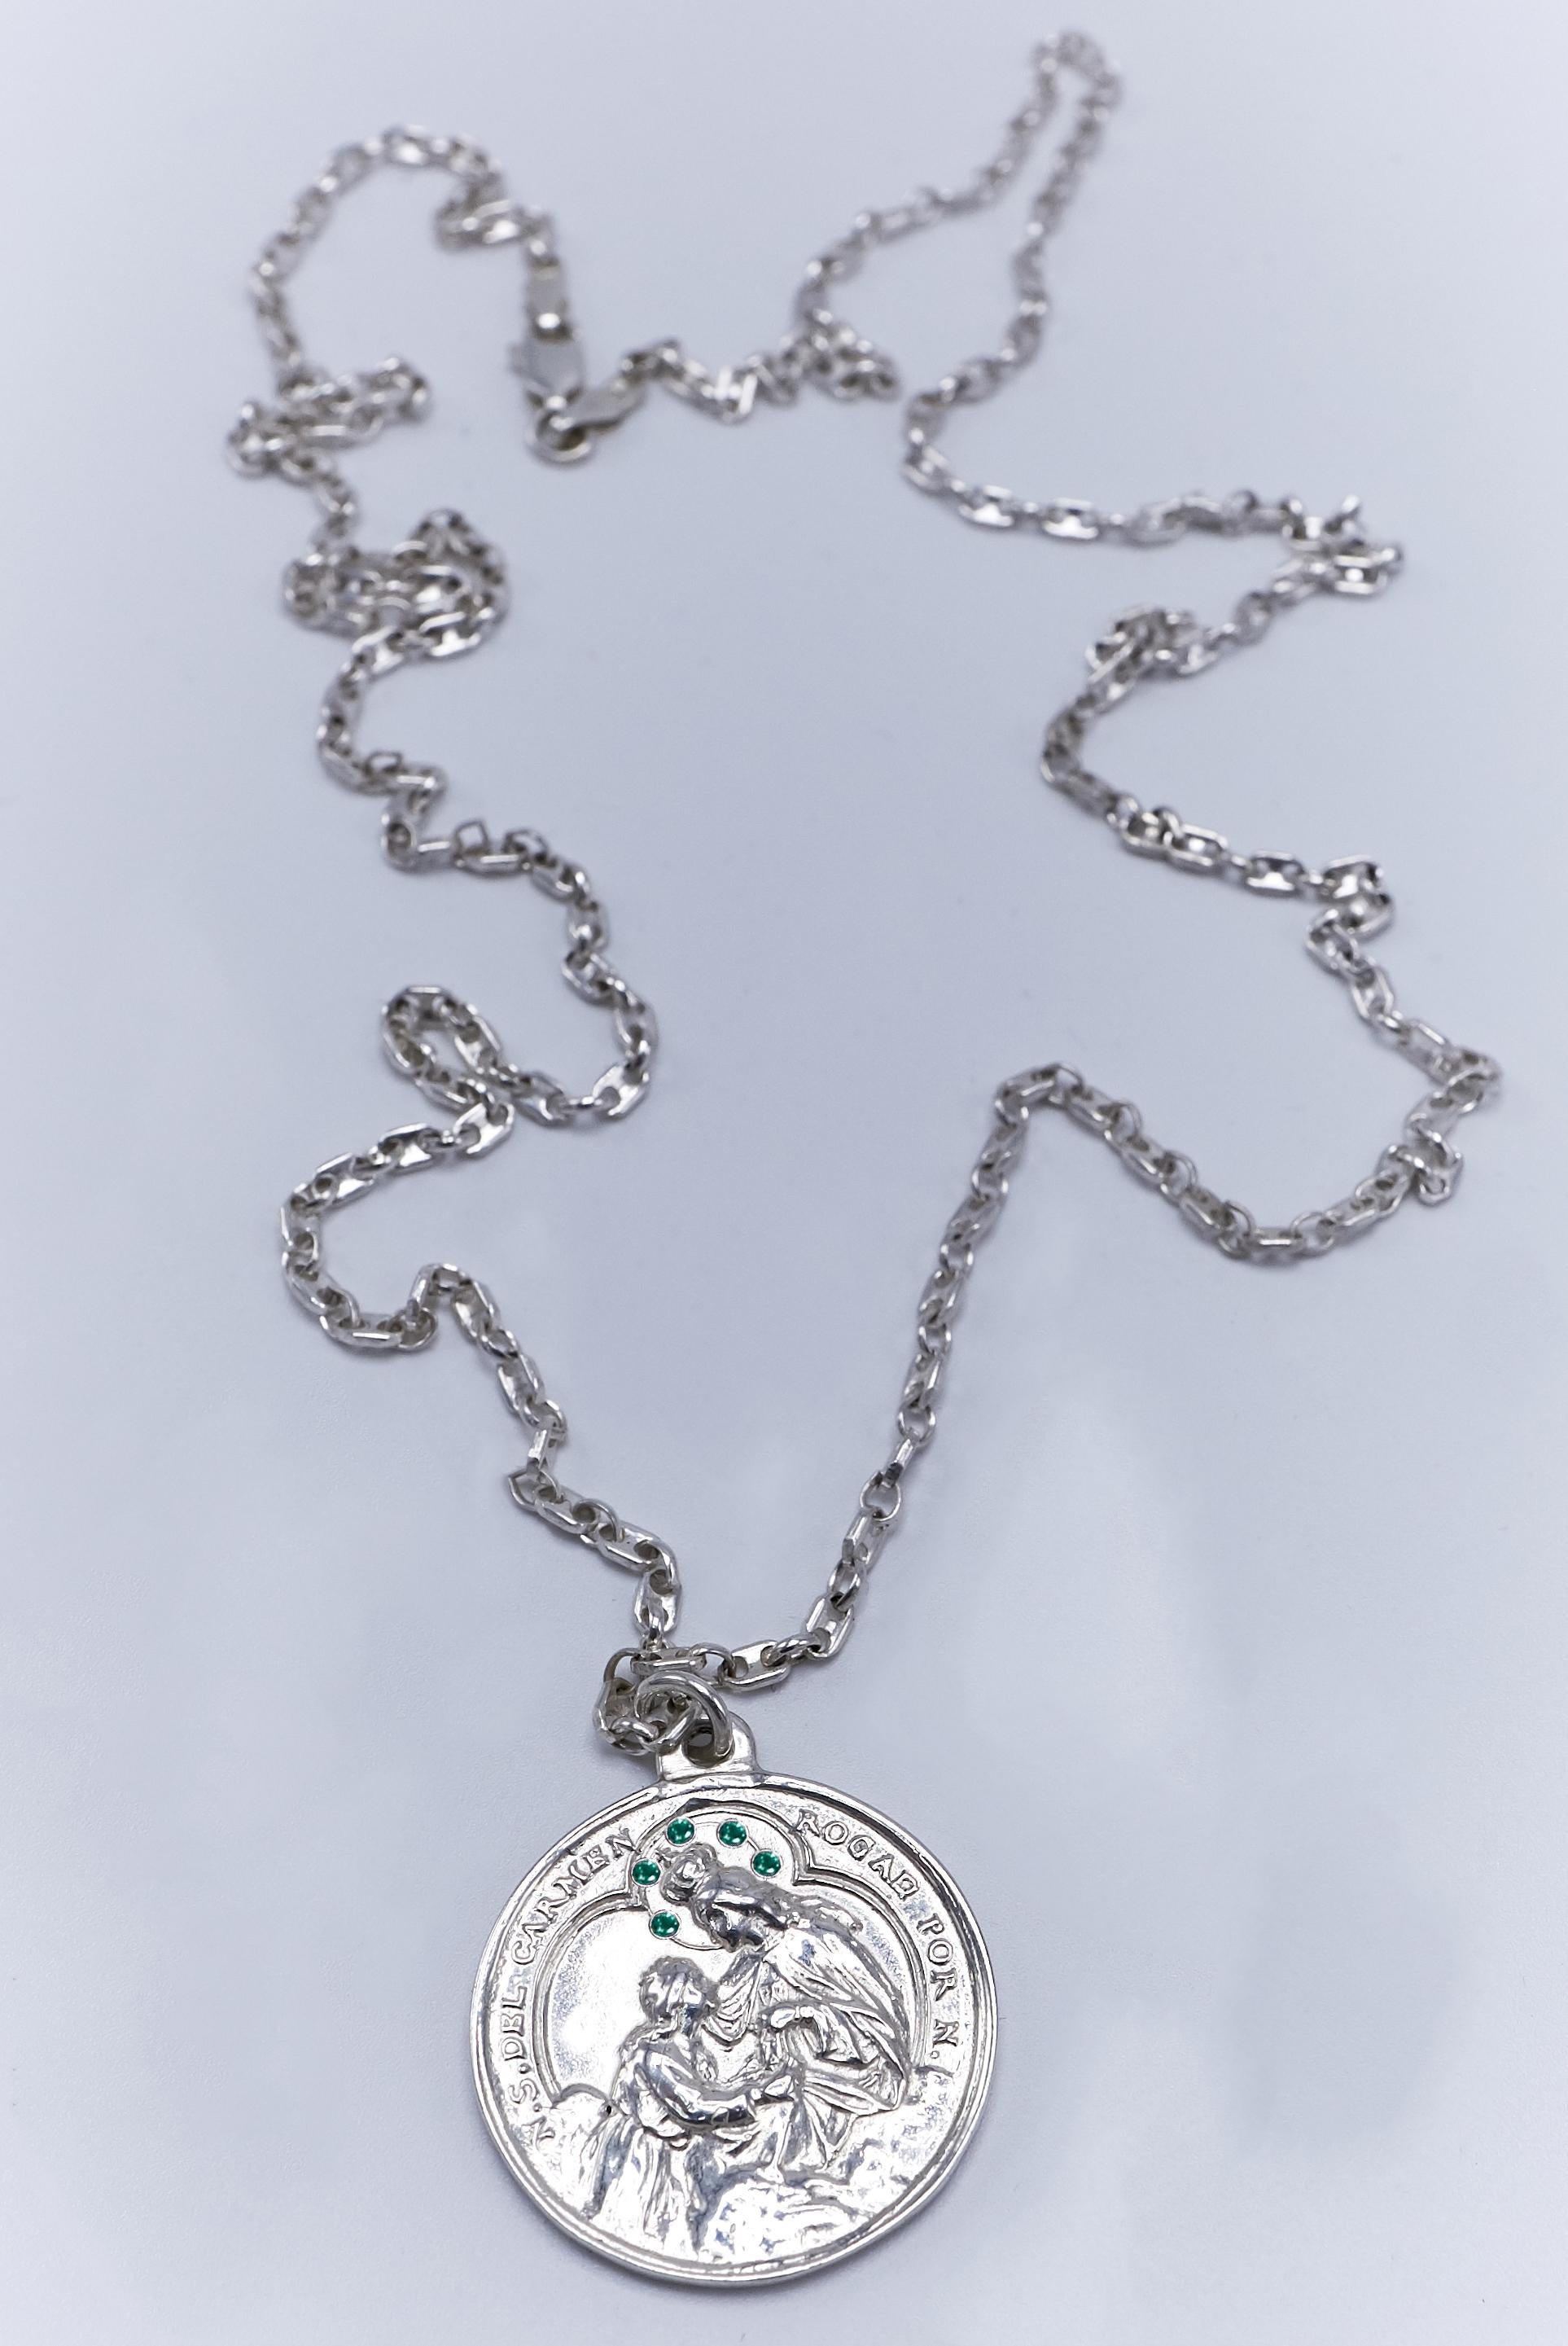 5 pcs de Chaîne Médaille Emeraude en Argent massif Vierge Miraculeuse J Dauphin
 

J DAUPHIN collier 